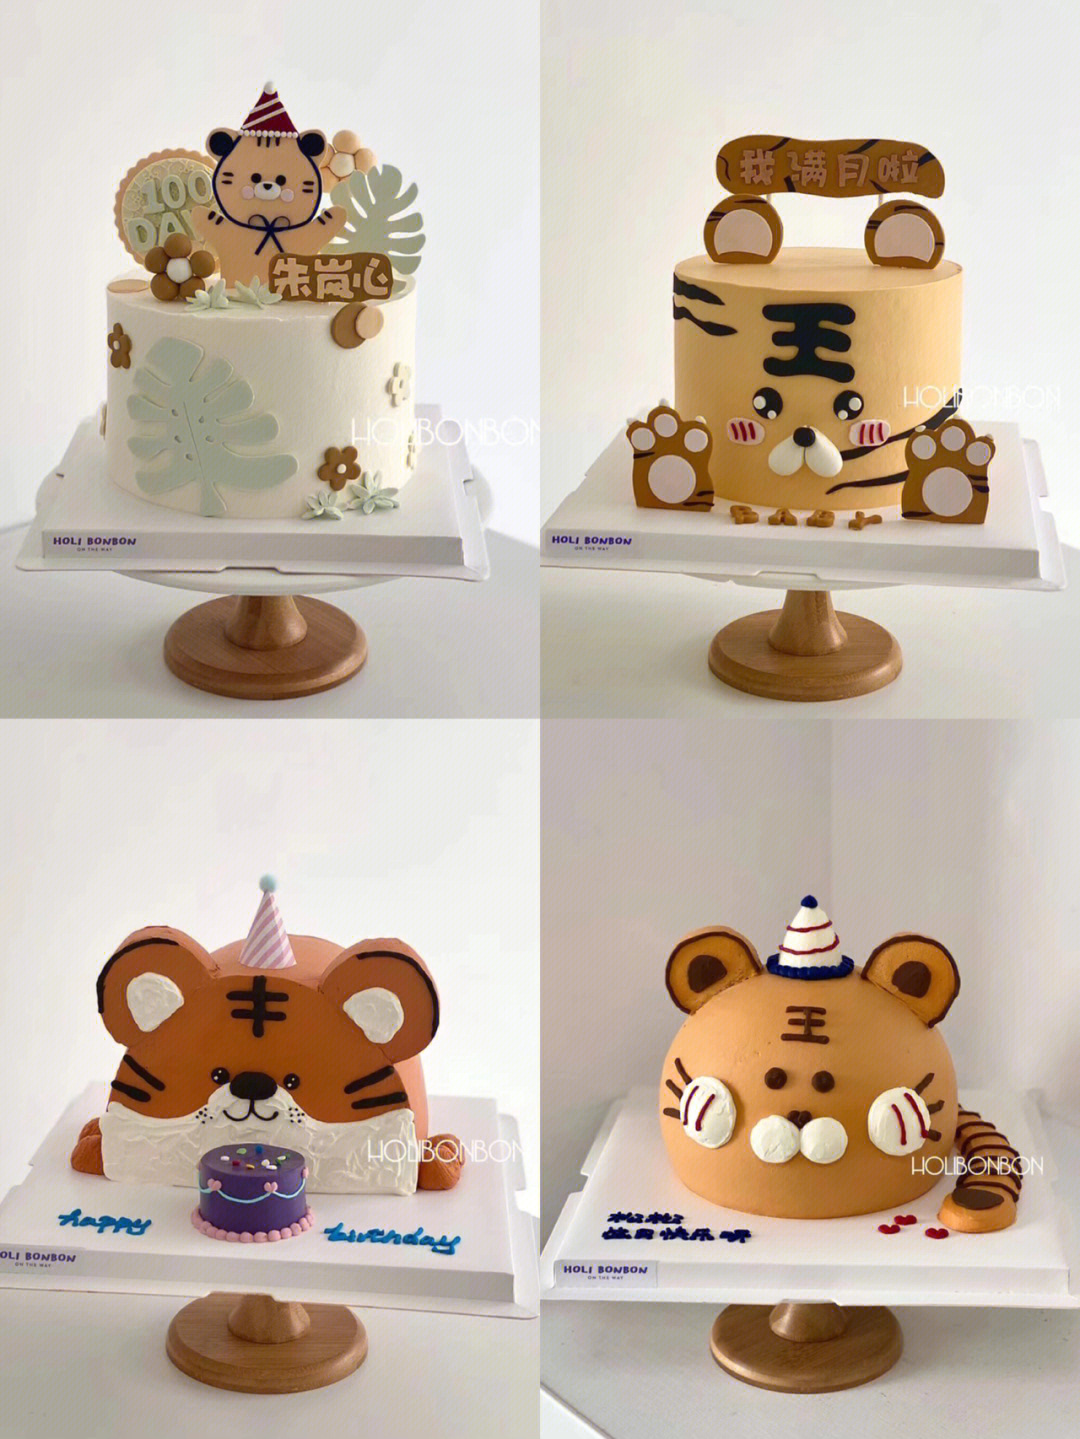 嗷呜~各种敲可爱的虎宝宝蛋糕#武汉蛋糕#武汉生日蛋糕#最好吃的奶油